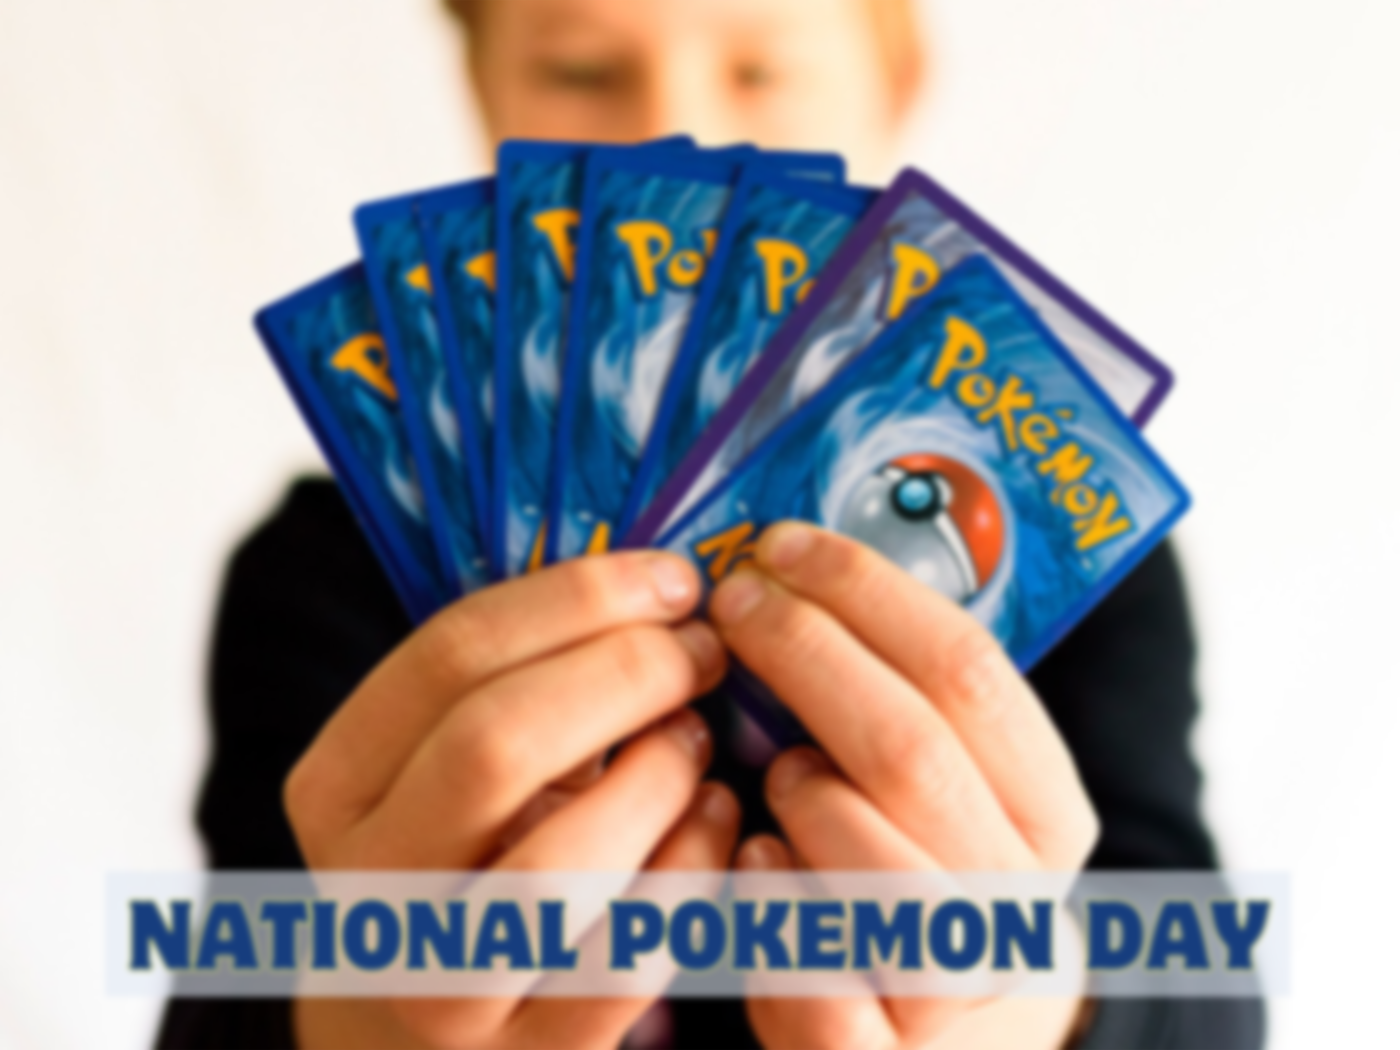 National Pokemon Day